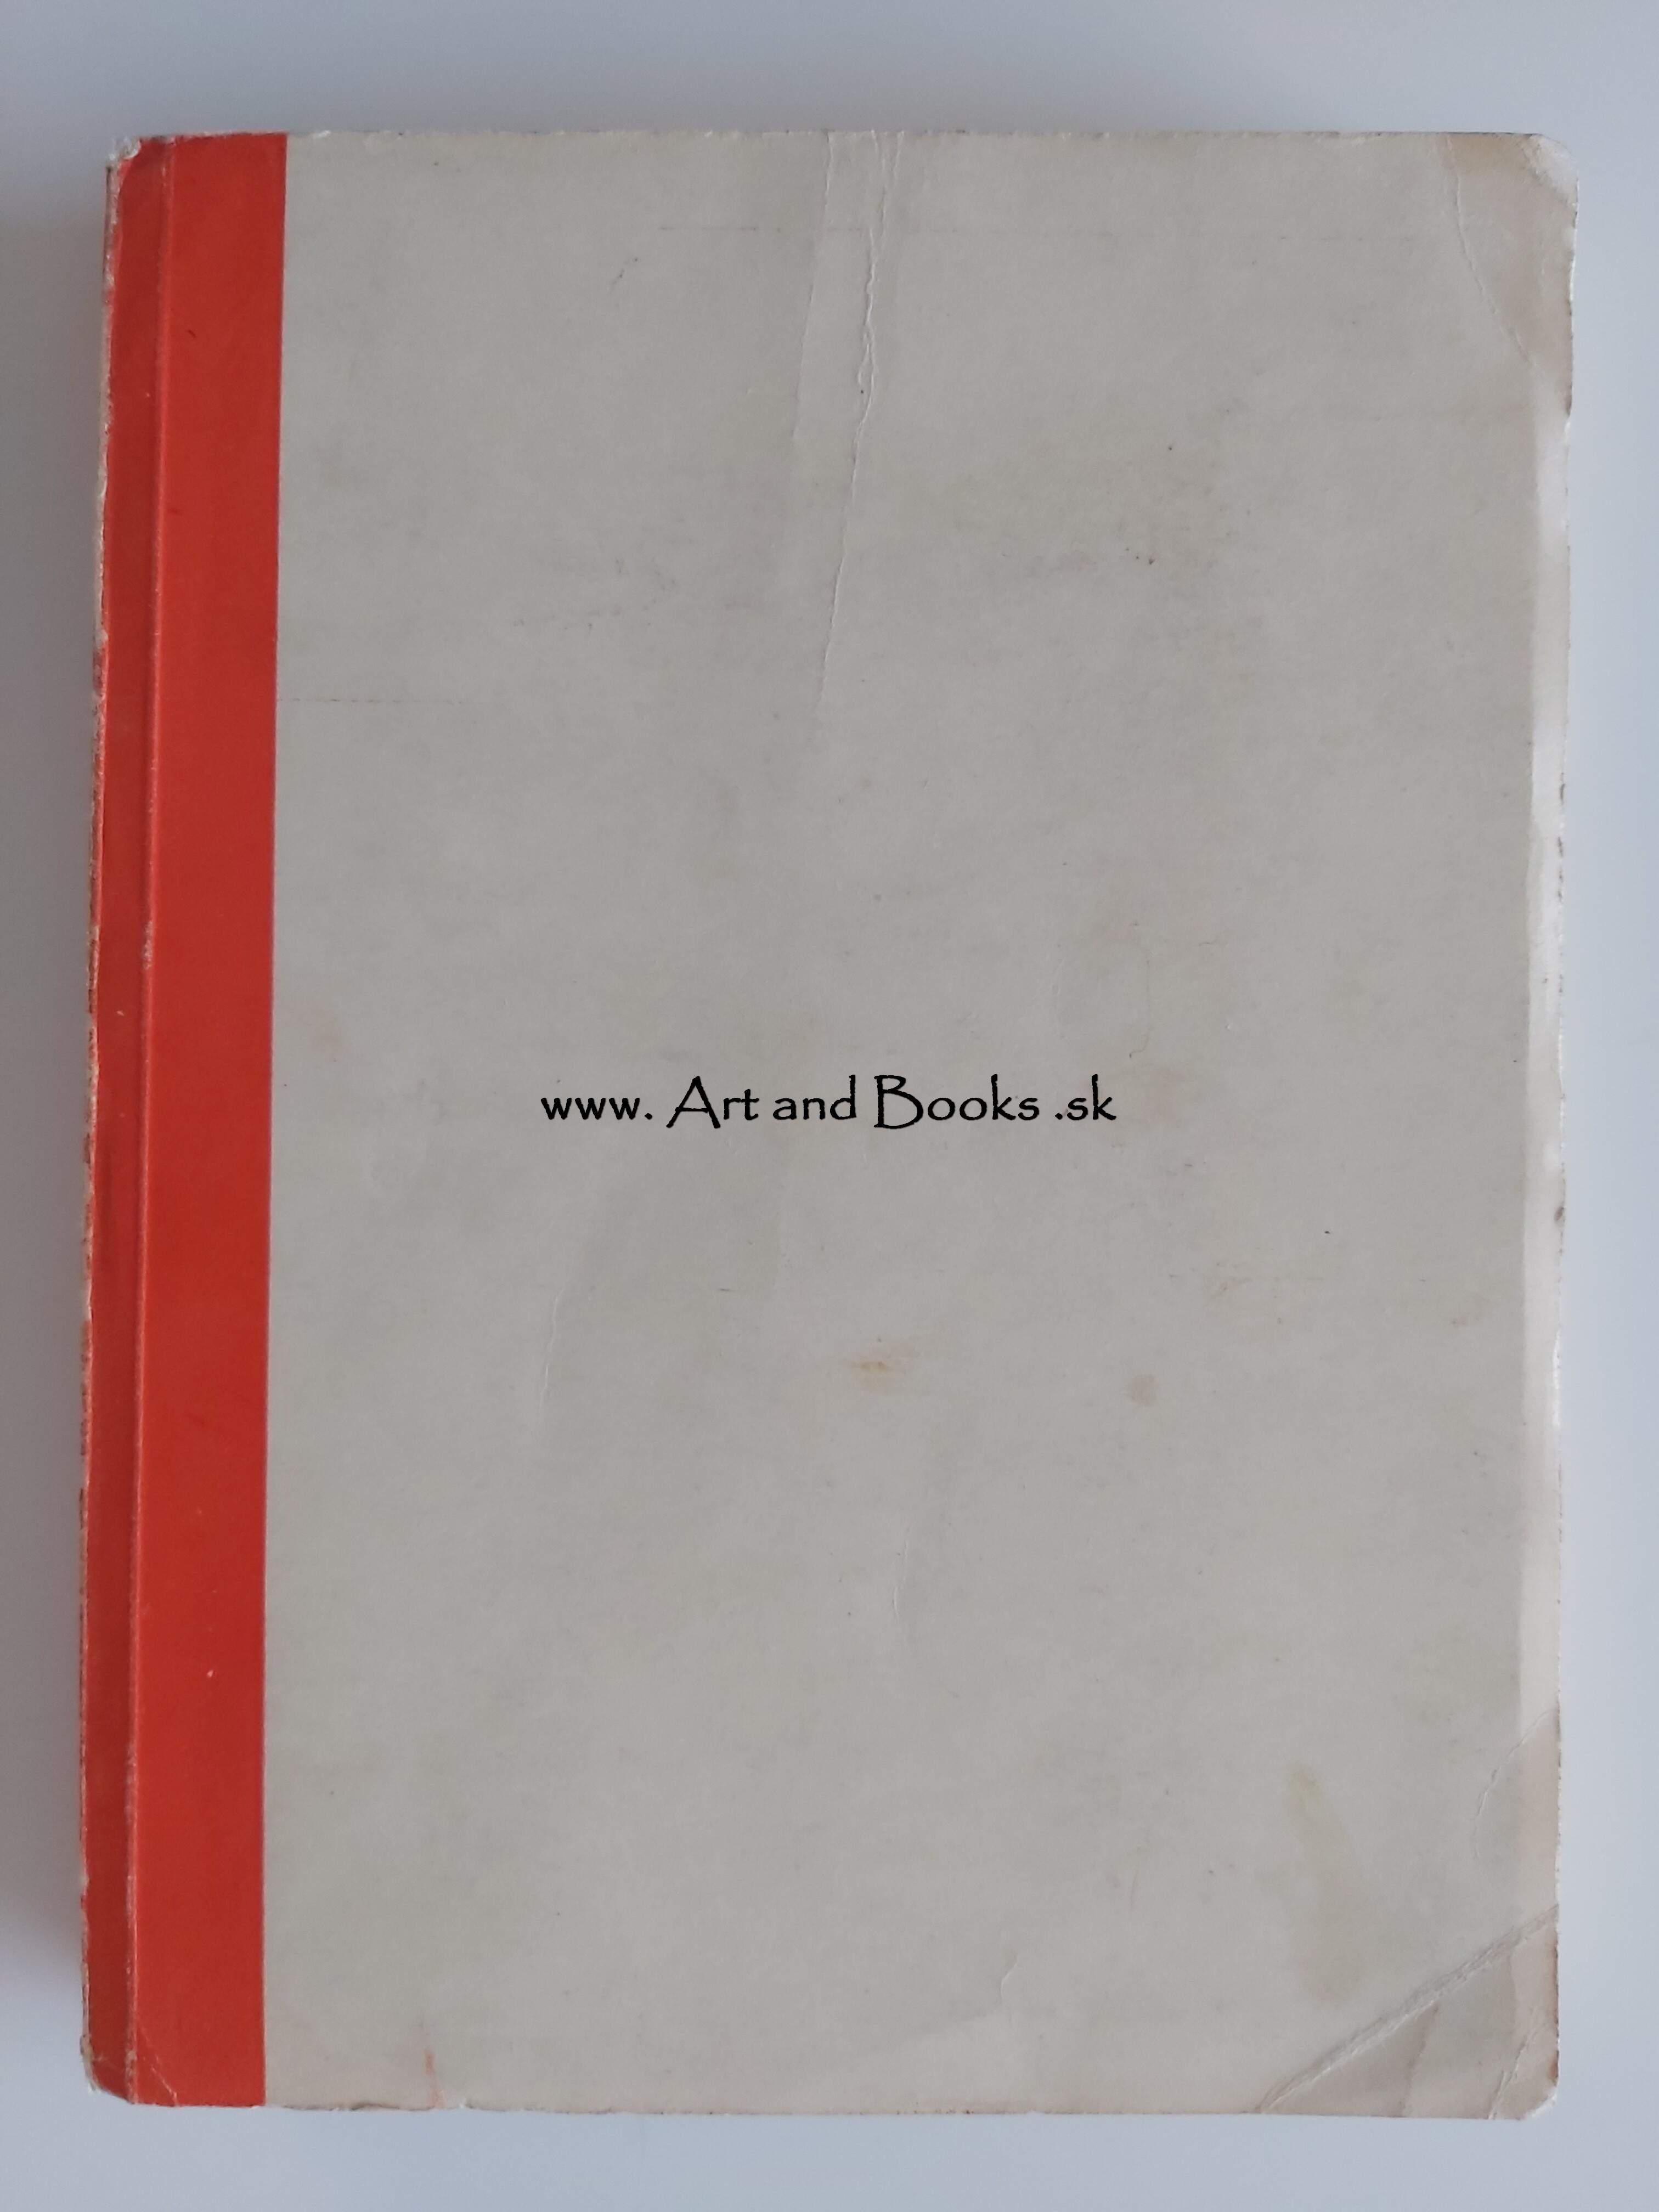 M. Pácalt - Prezident opäť medzi nami (1945) (sold/predané) ● 154116